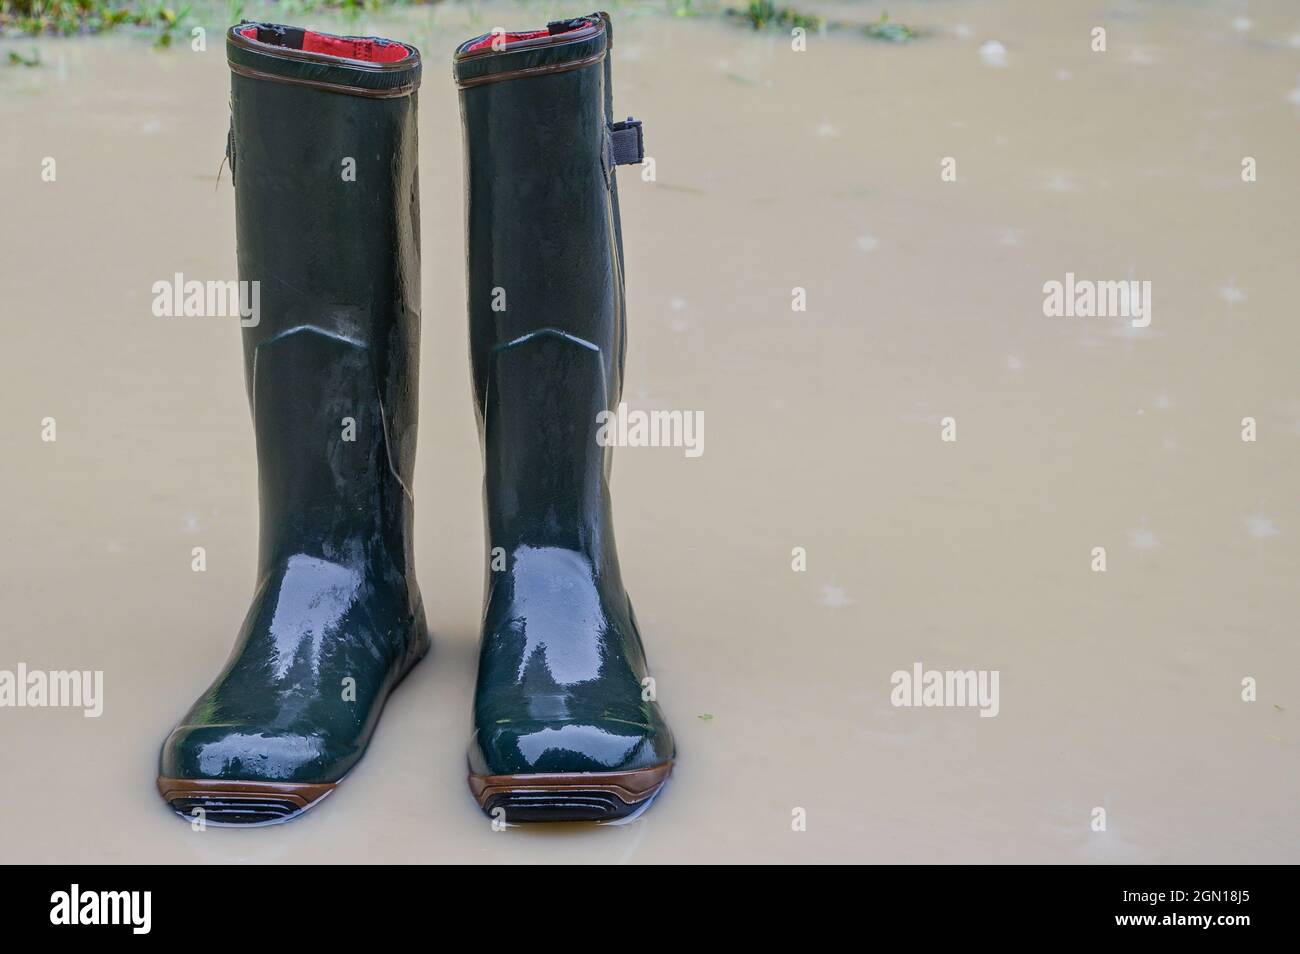 In caso di pioggia, stivali di gomma bagnati si trovano in una pozza d'acqua. Foto Stock